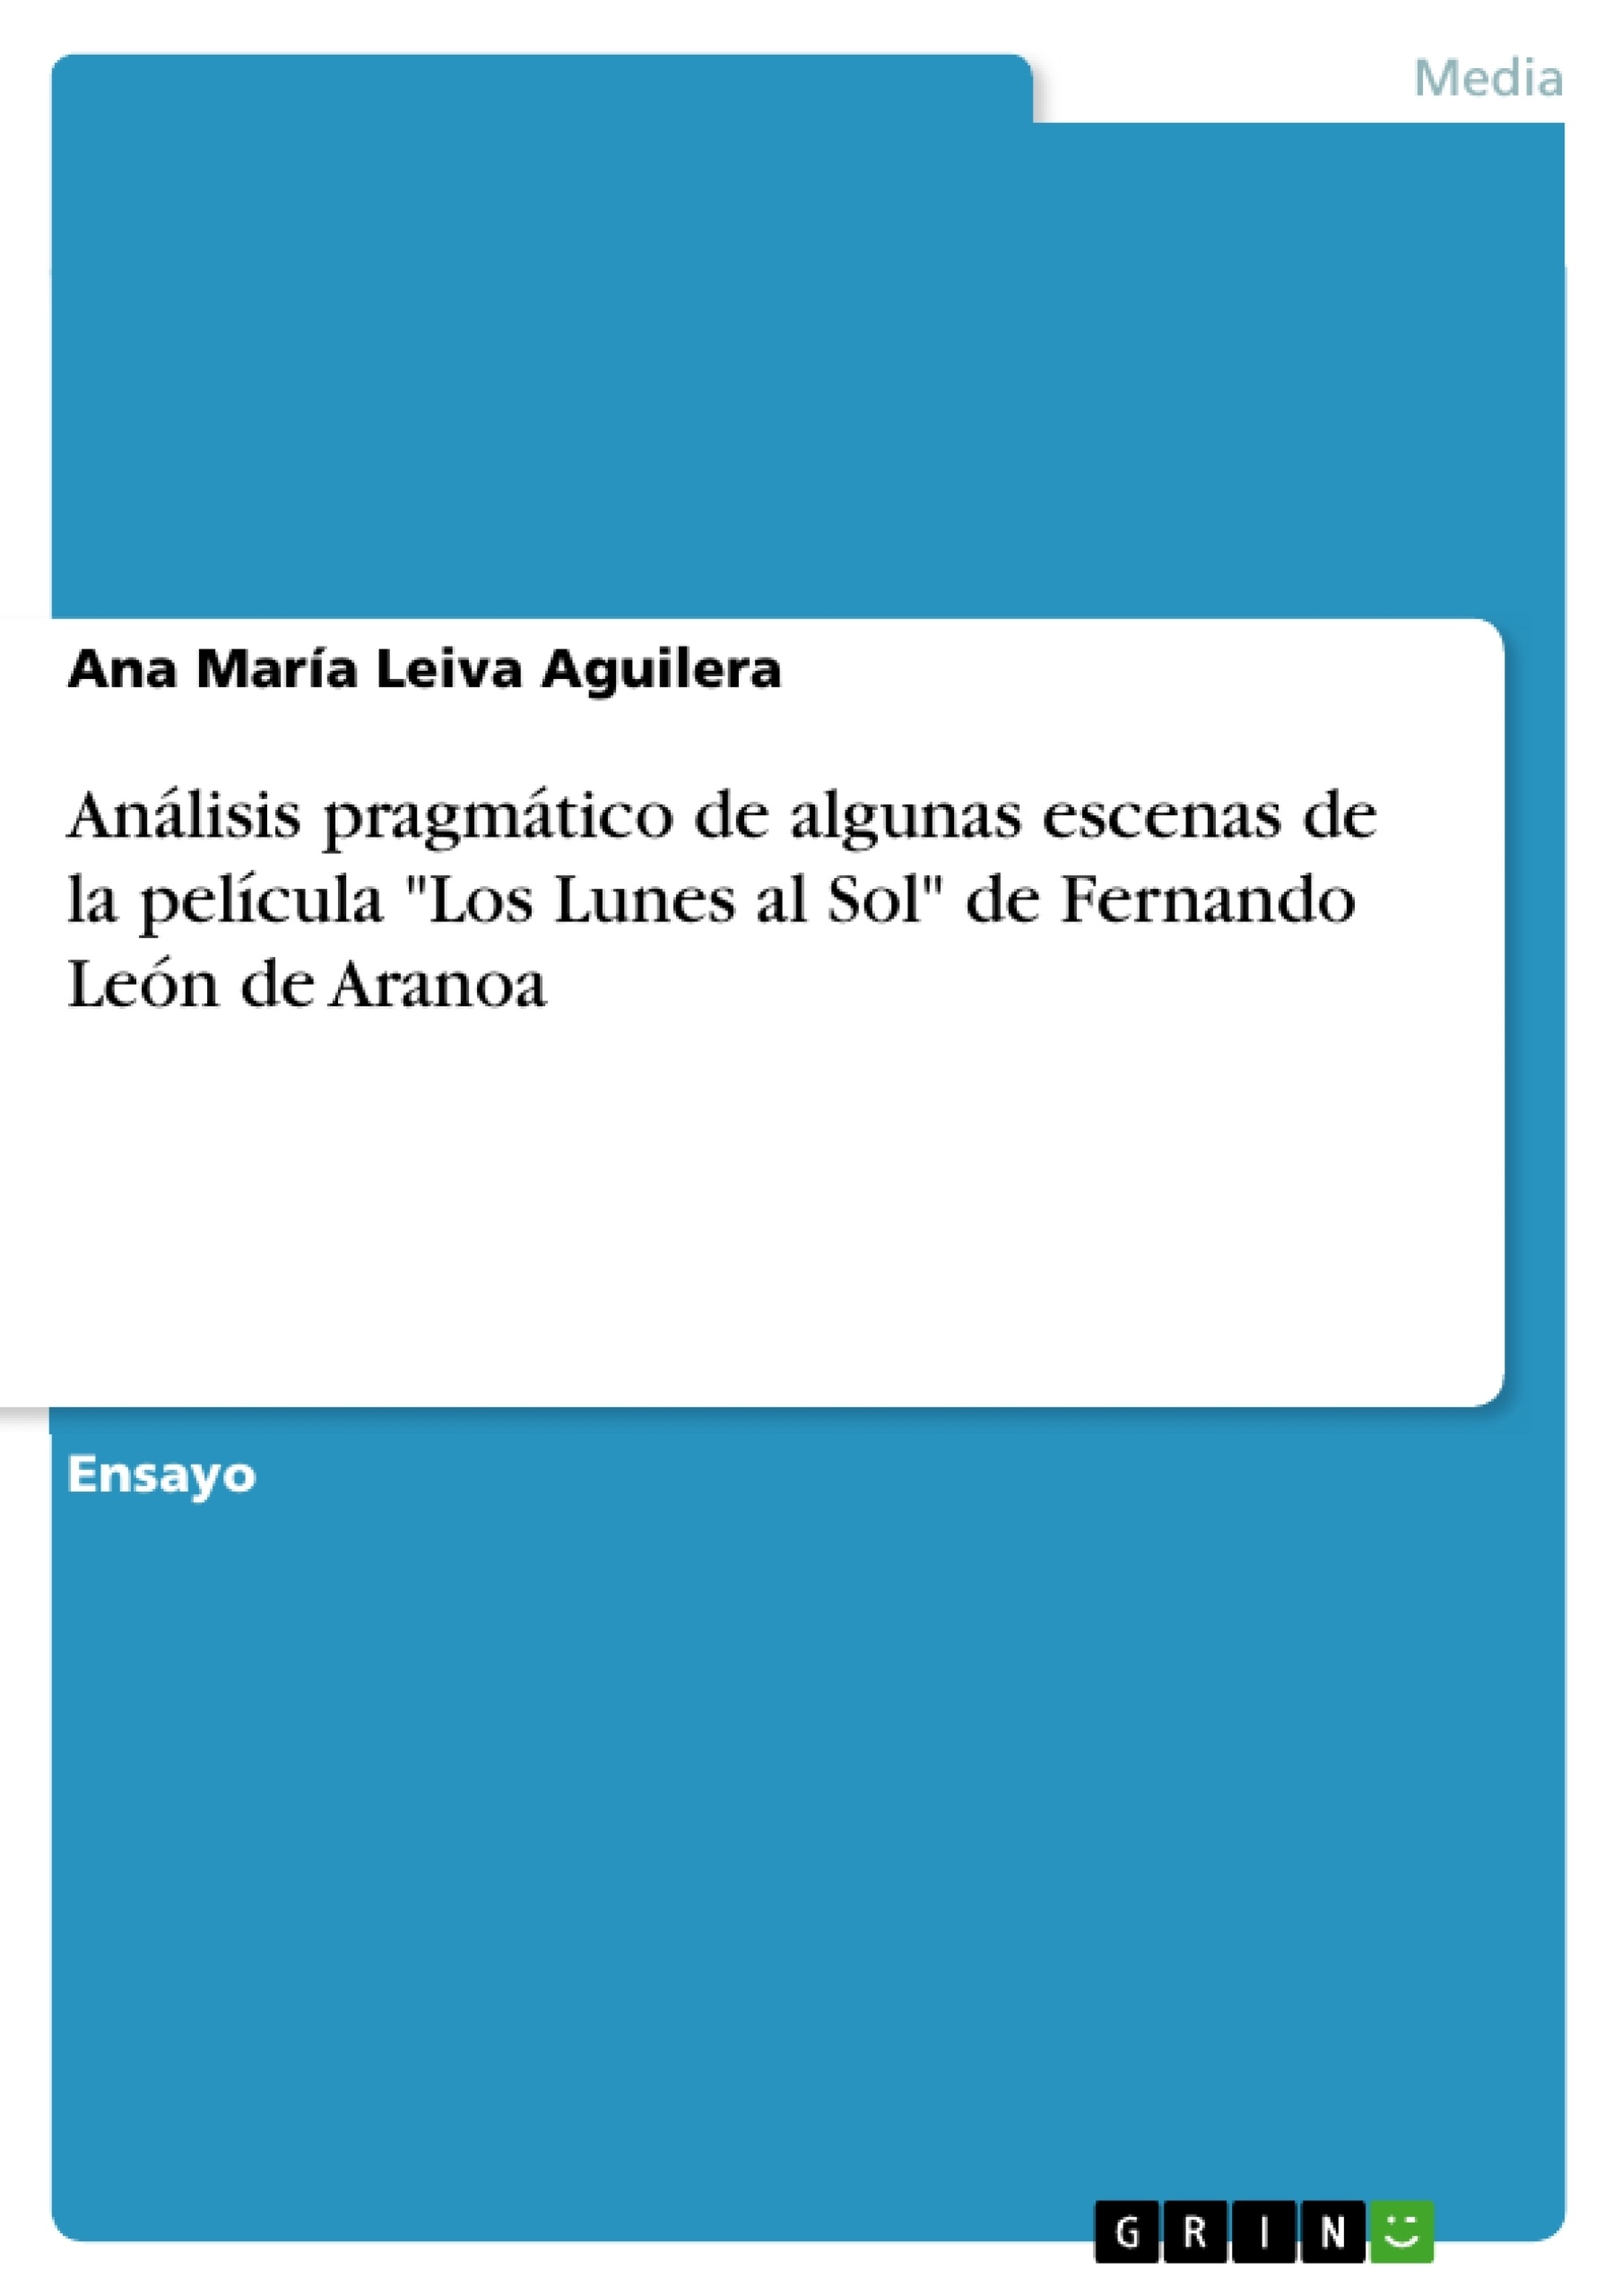 Título: Análisis pragmático de algunas escenas de la película "Los Lunes al Sol" de Fernando León de Aranoa